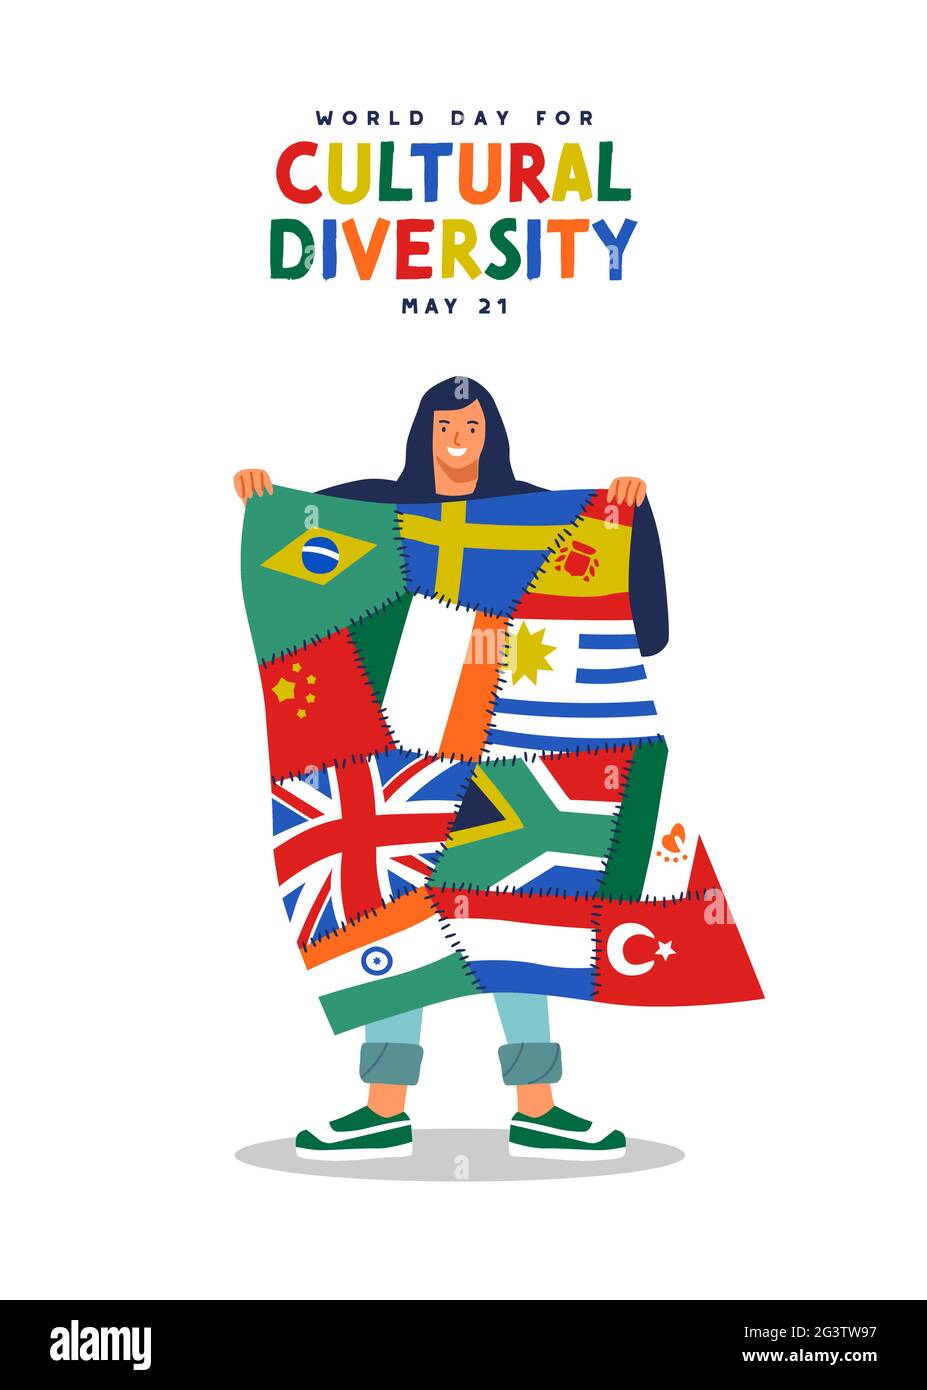 Grußkarte zum Welttag der kulturellen Vielfalt – Illustration einer fröhlichen Frauenfigur, die verschiedene internationale Länderflaggen zusammenhält. Globale Kommunikation Stock Vektor